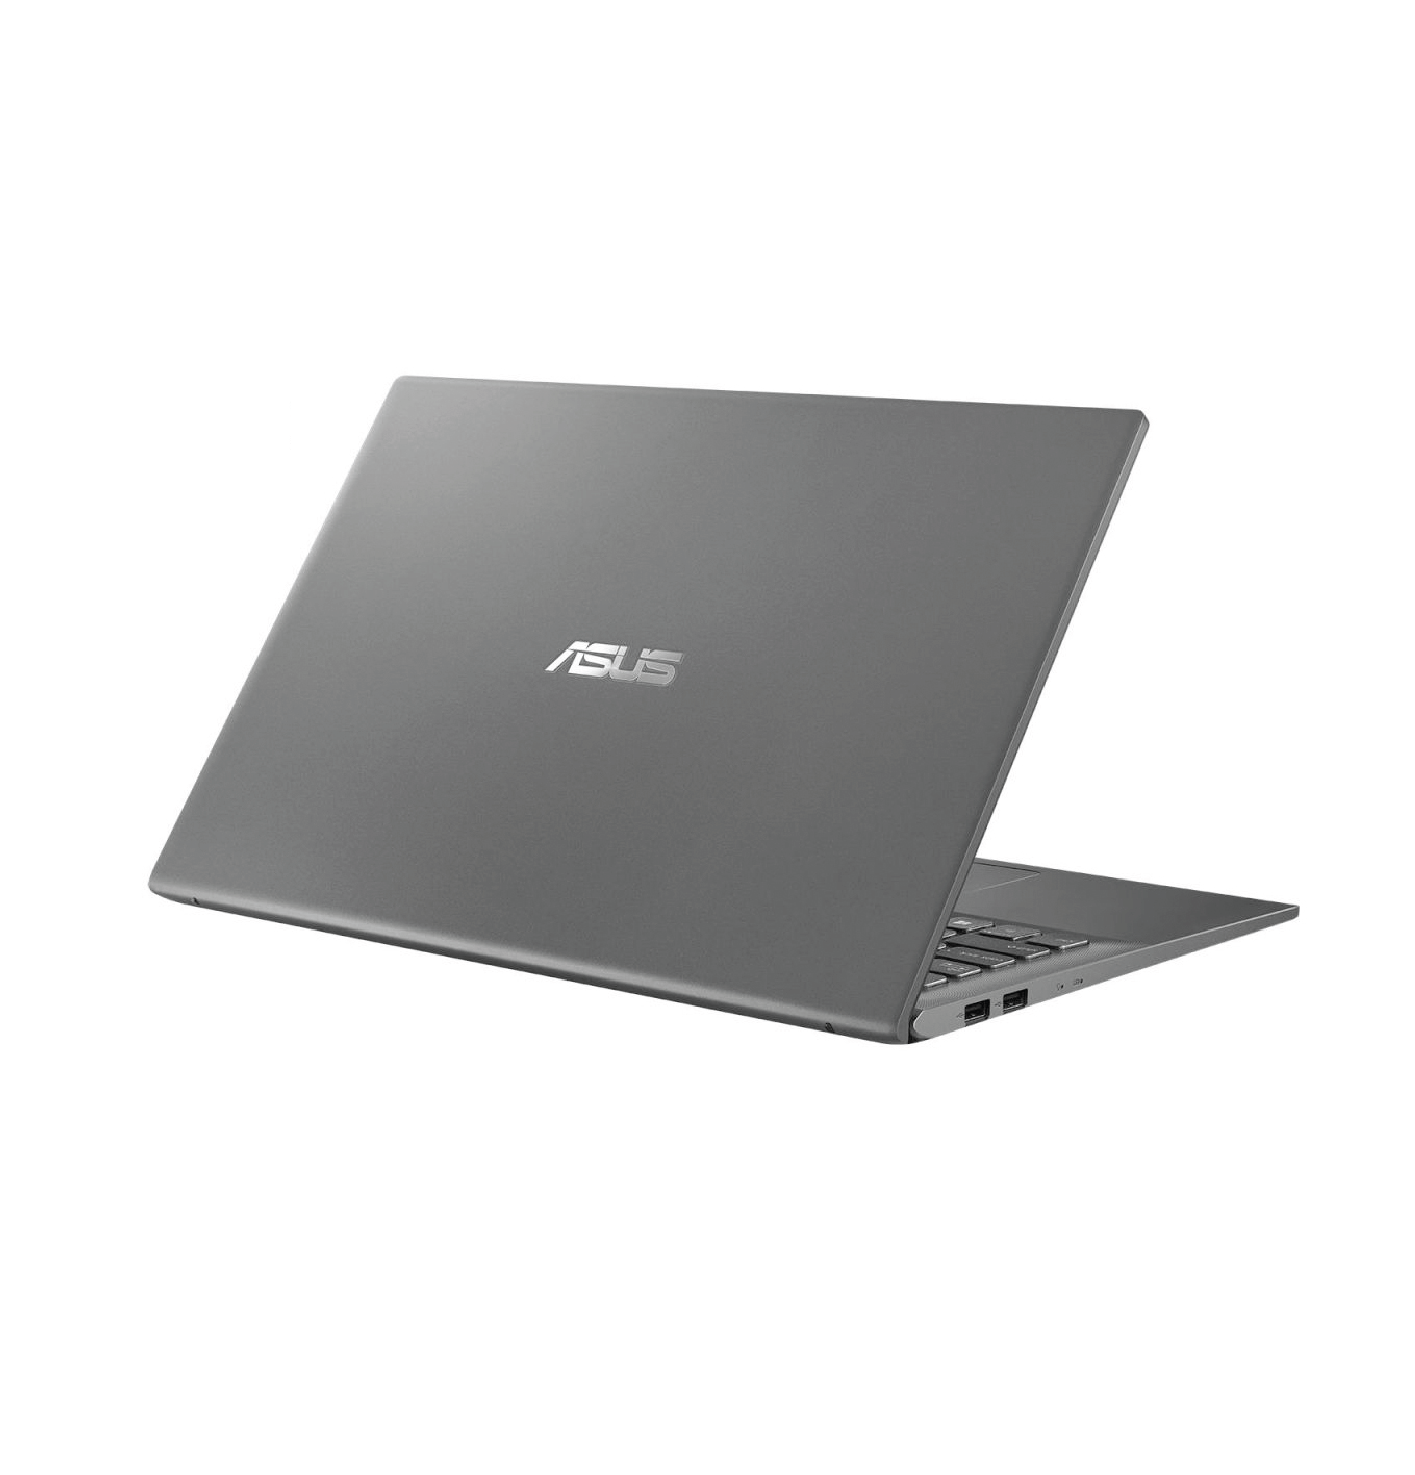 لپ تاپ ایسوس 15اینچ  Asus VivoBook 15 R564JP : Core i5-1035G1/ 8GB RAM / 1TB HDD + 256GB SSD / 2GB MX330 thumb 451